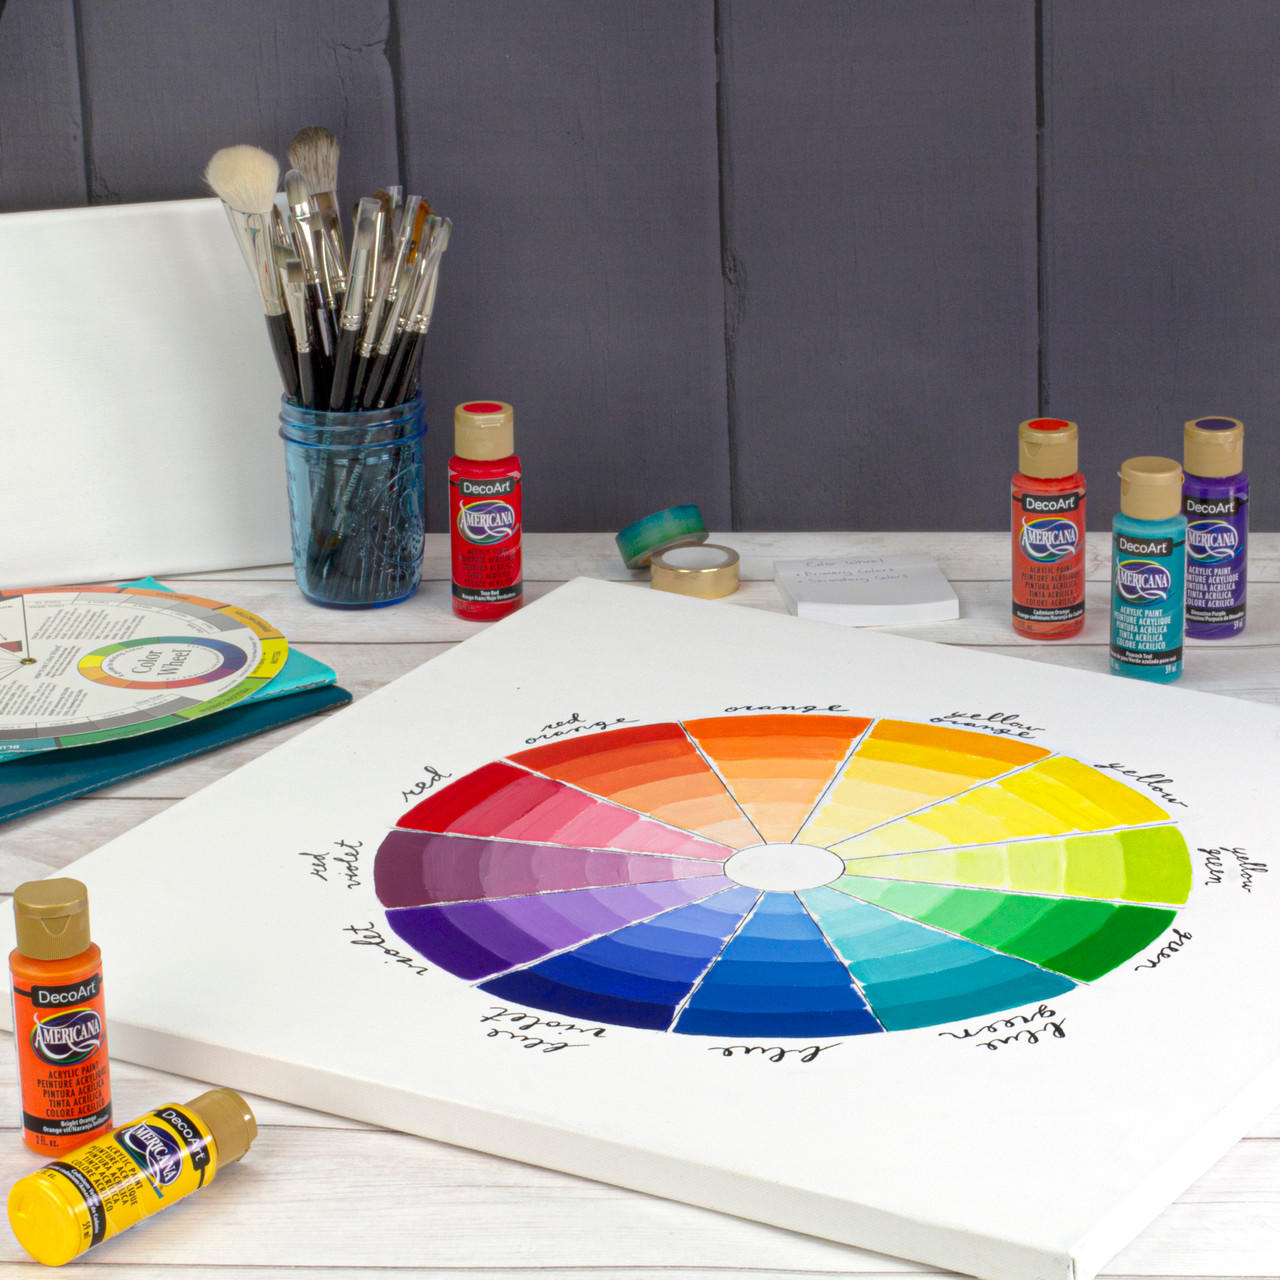 Acrylic Paint Kit - Shop Online